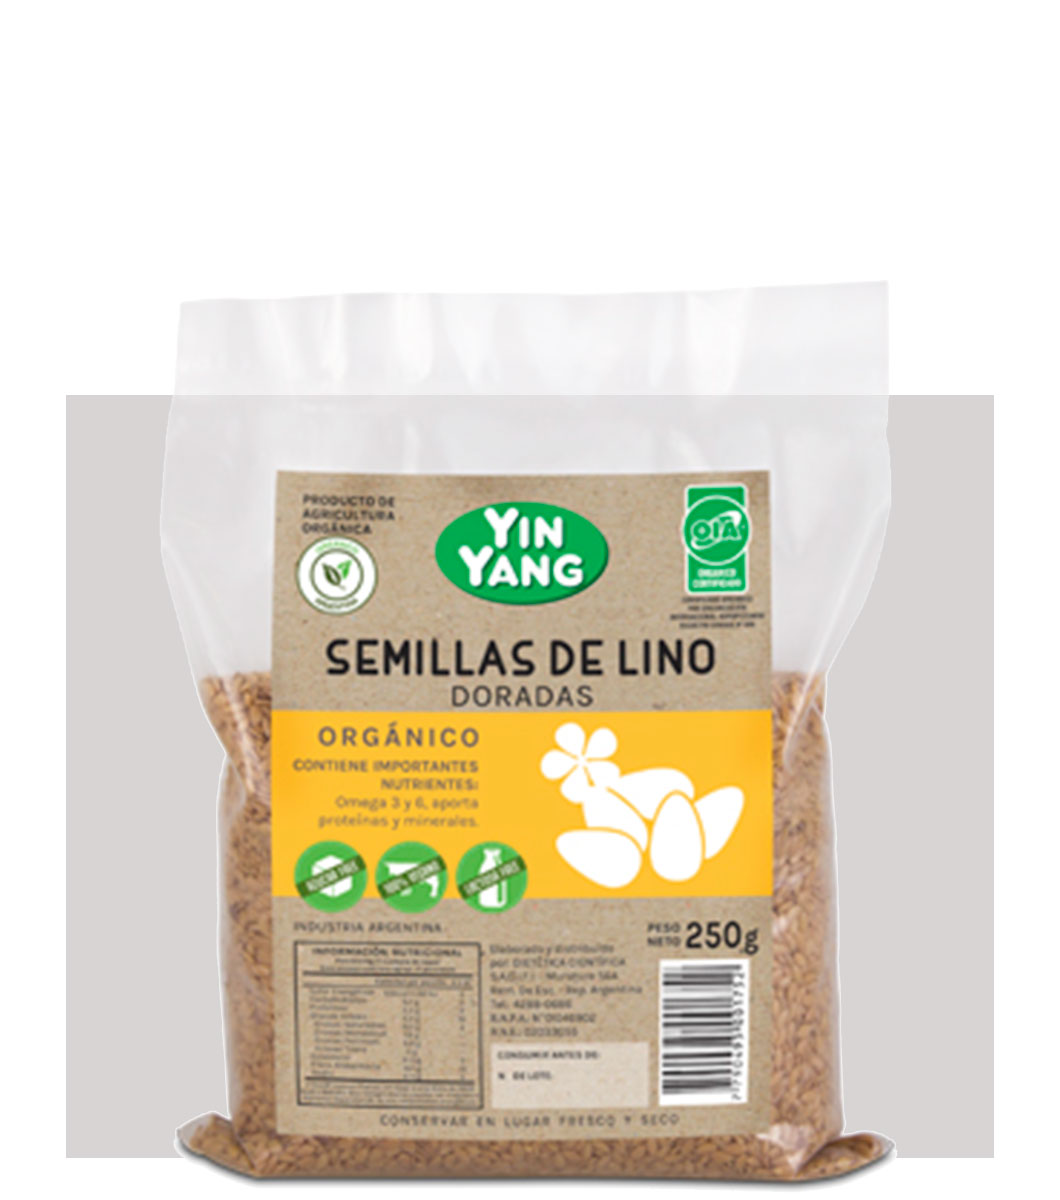 Semillas de Lino dorado Orgánico – Yin Yang Argentina